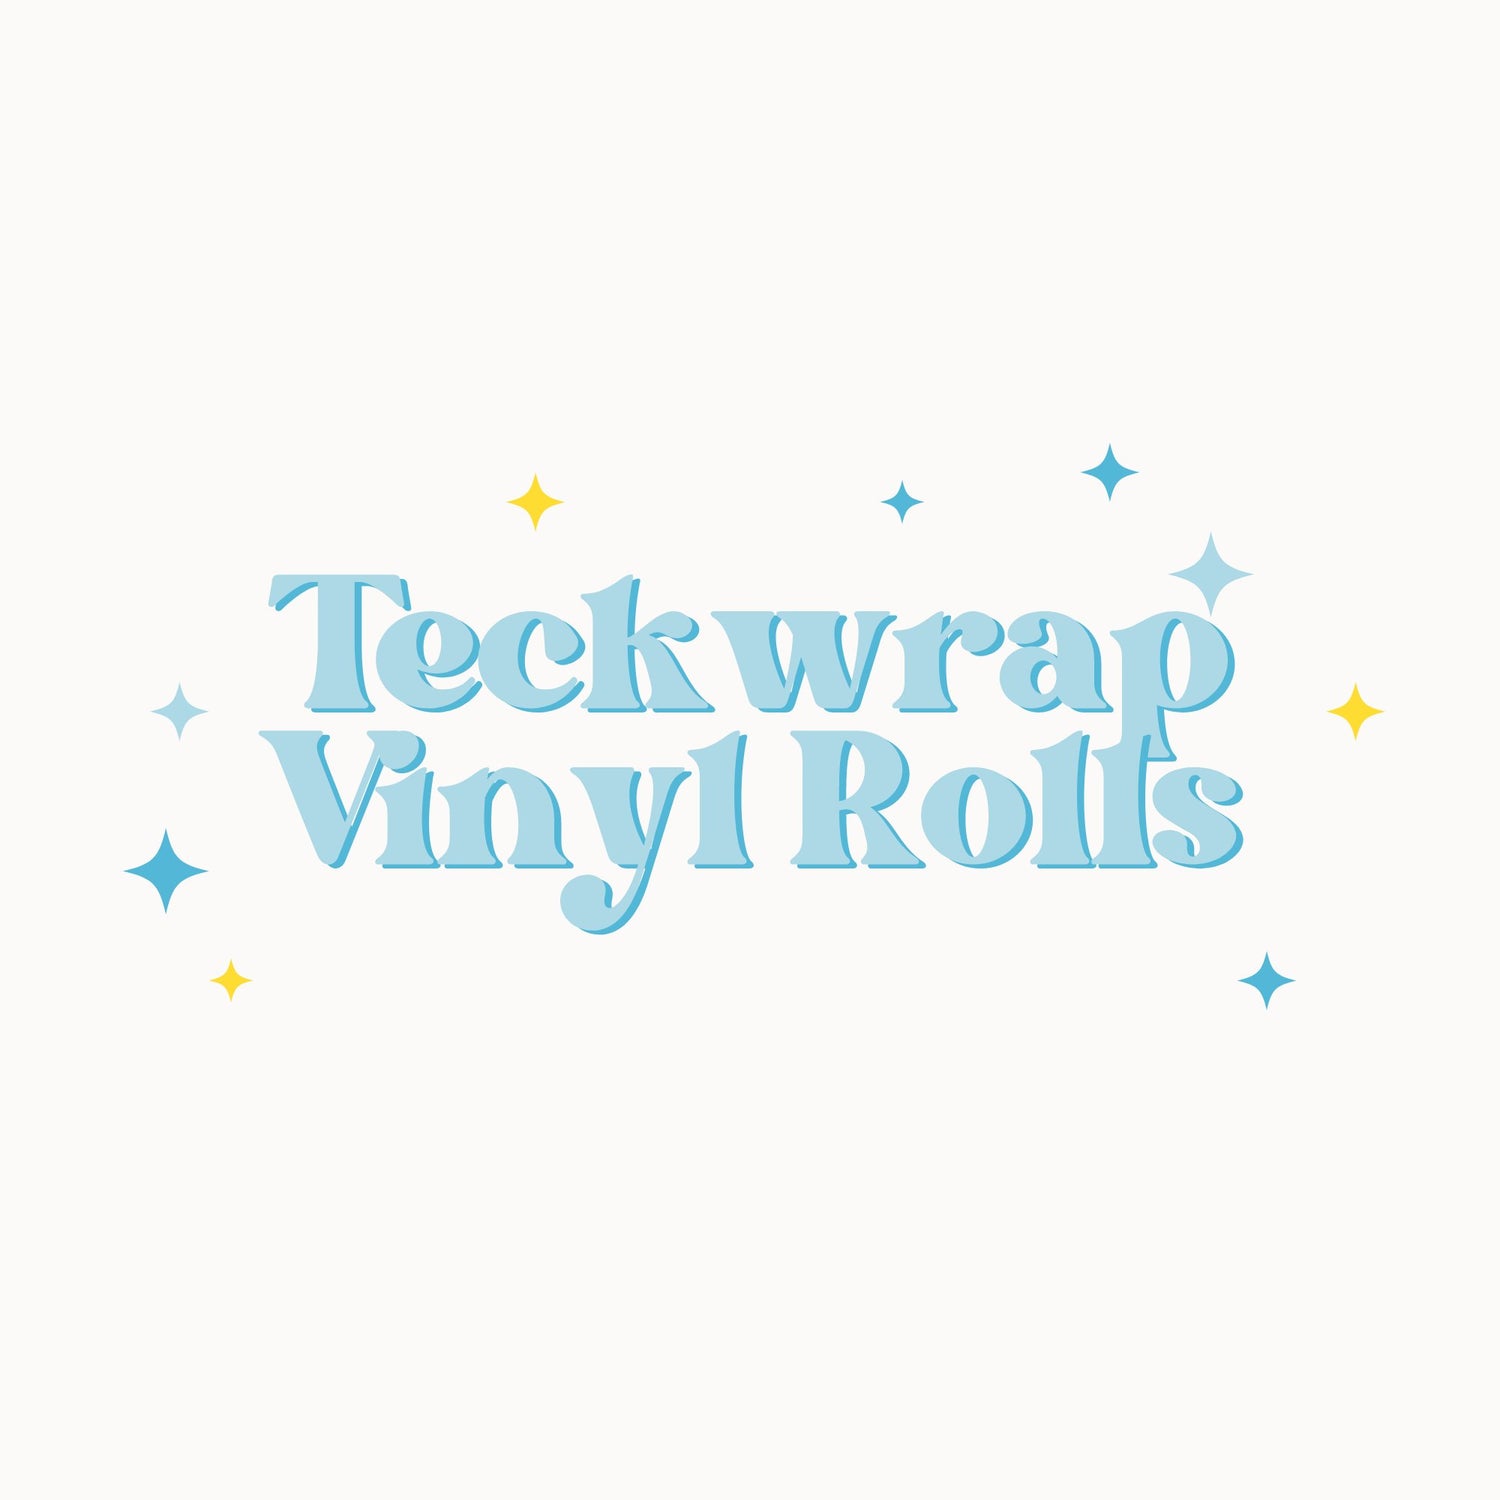 Teckwrap Vinyl Rolls